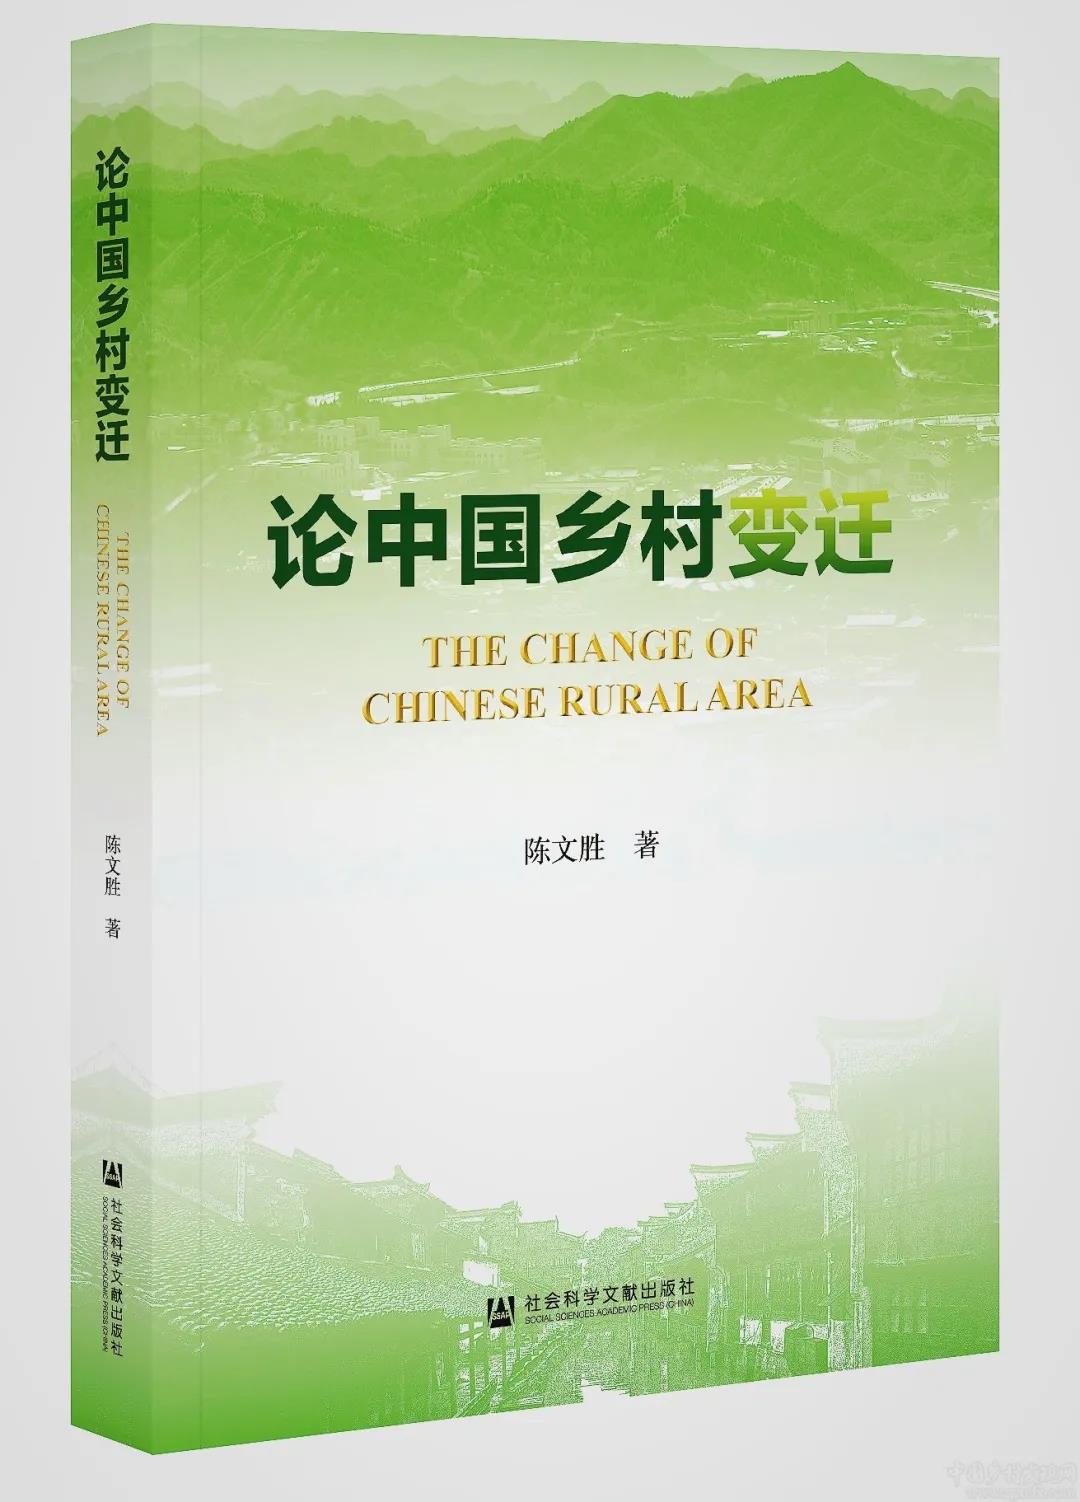 书讯丨陈文胜新著《论中国乡村变迁》出版